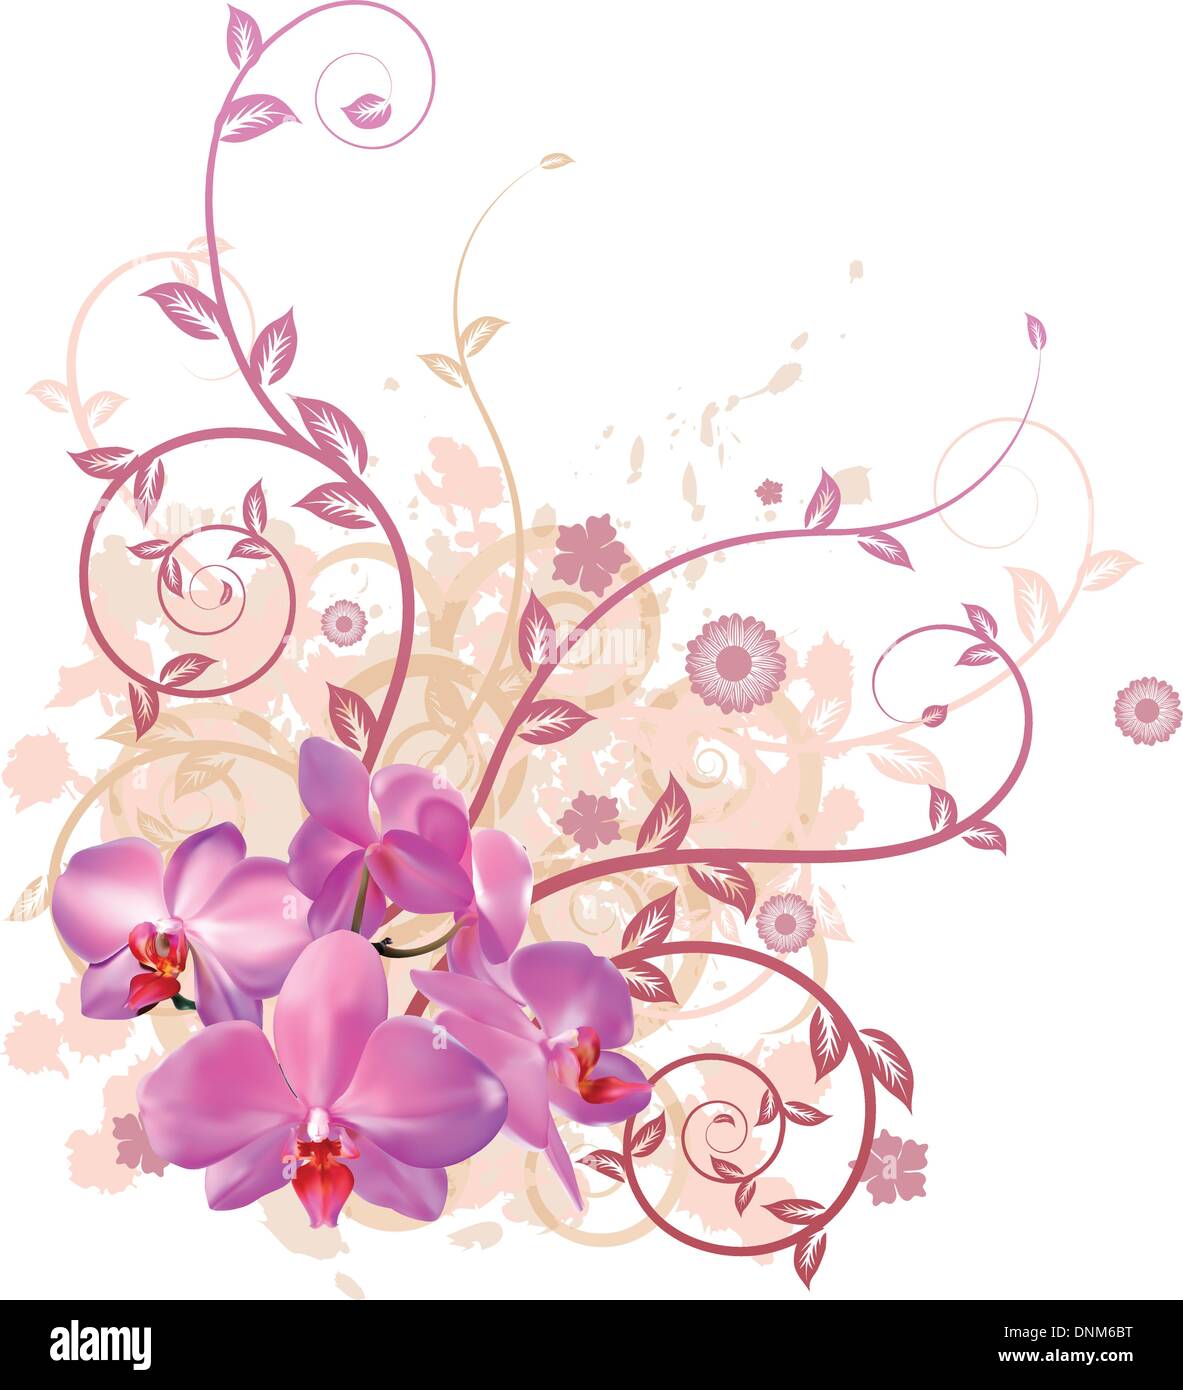 Molto elegante vettore sfondo floreale illustrazione di rosa fiori di orchidea. Illustrazione Vettoriale